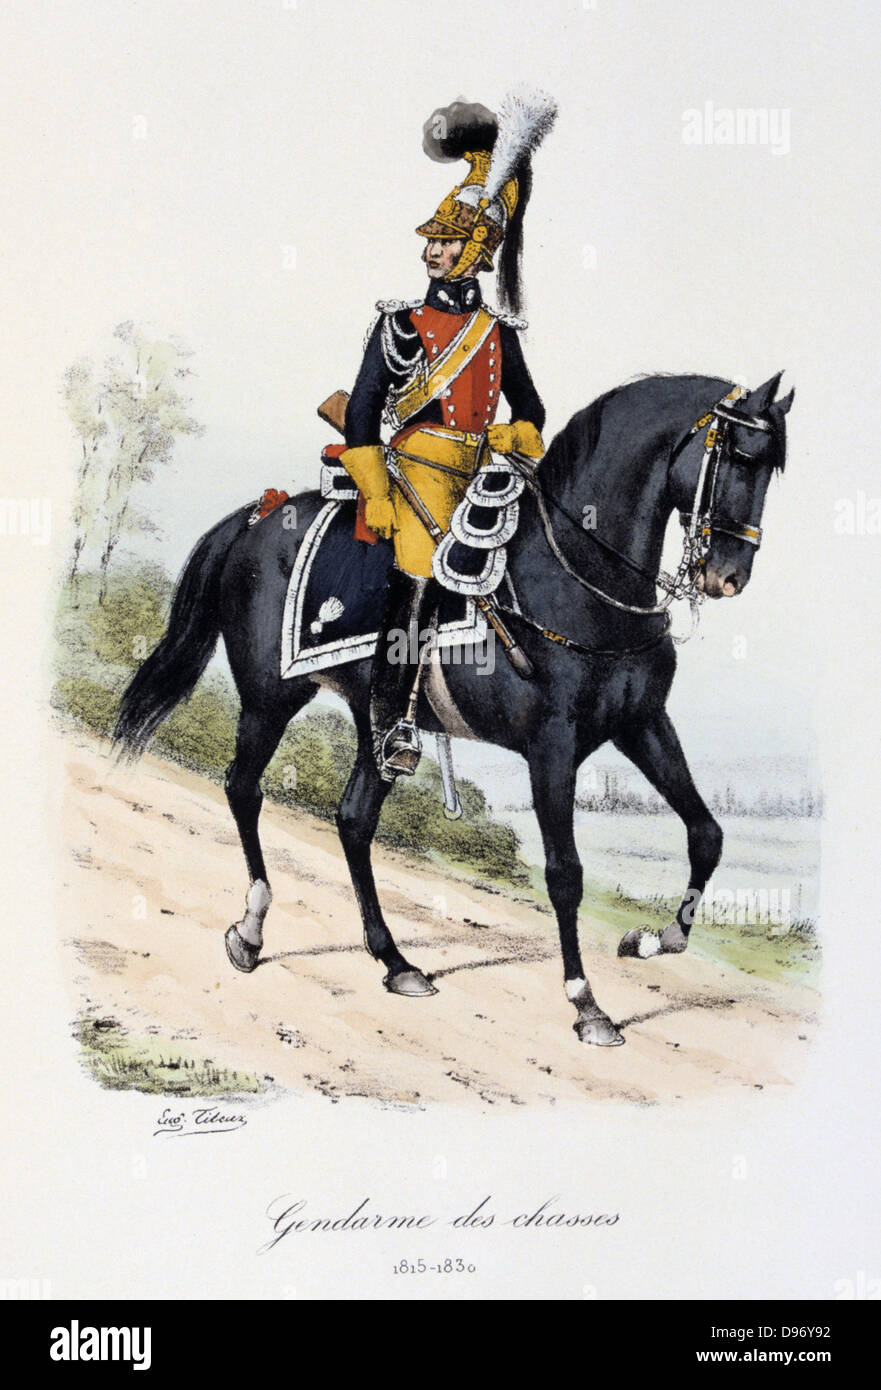 Mounted Military Gendarme, 1815-1830. From 'Histoire de la maison militaire du Roi de 1814 a 1830' by Eugene Titeux, Paris, 1890. Stock Photo